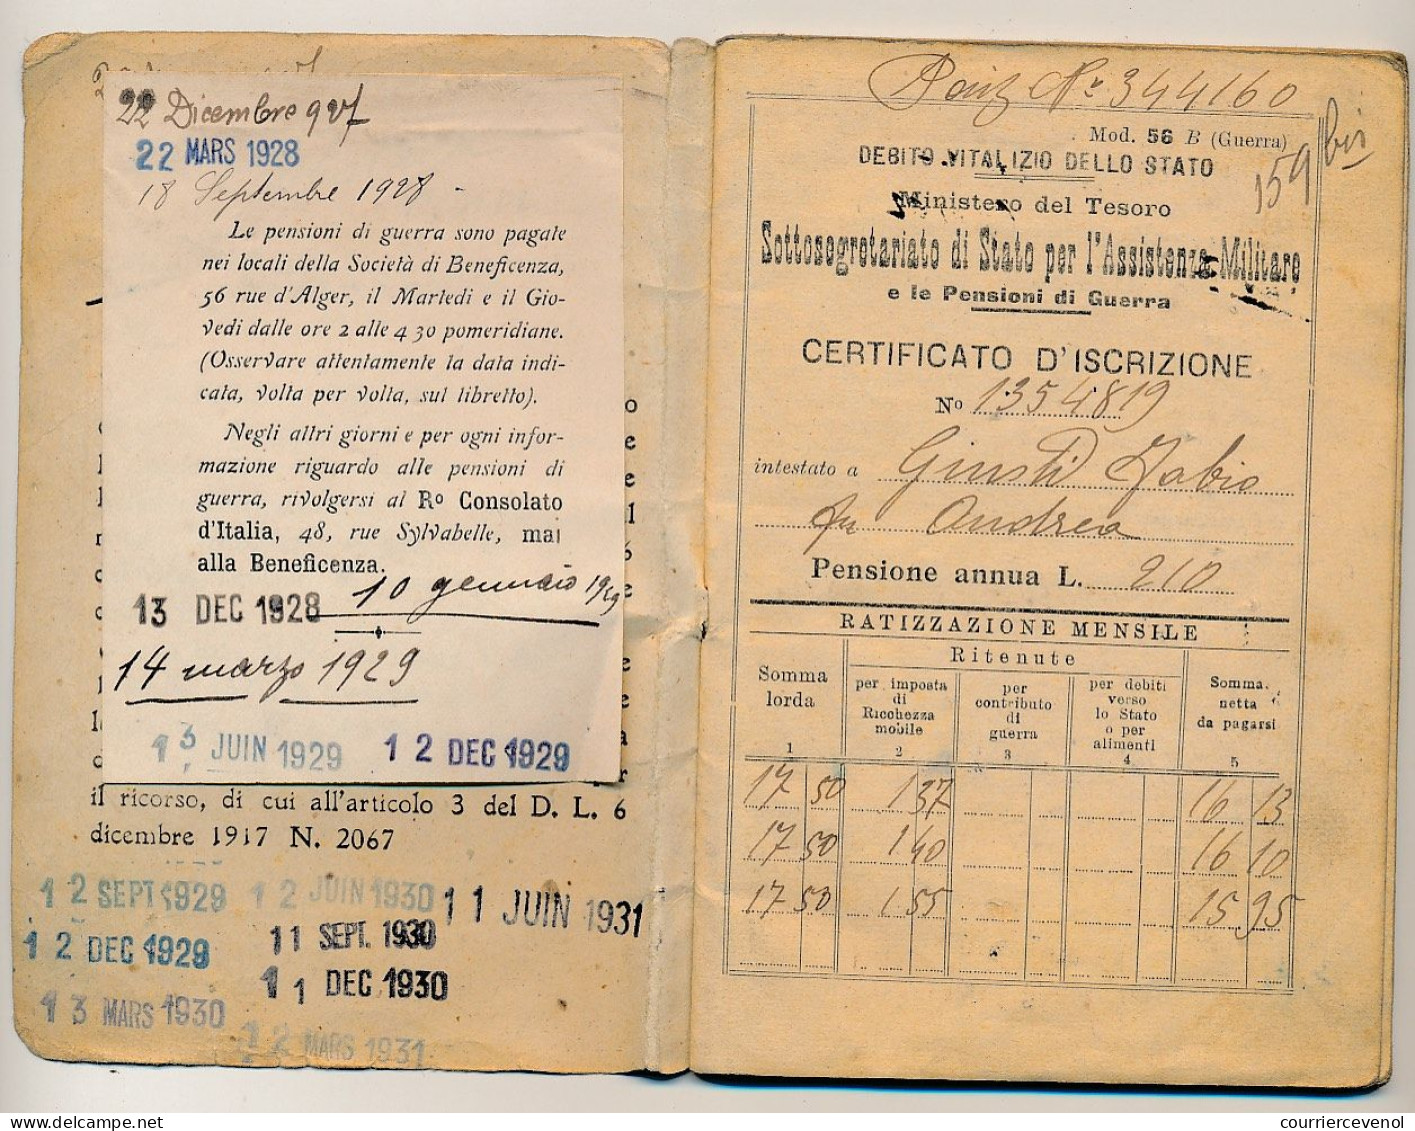 ITALIE - Passeport 1930 et Carnet de pensionné même époque - Cachet Consulat italien de Marseille